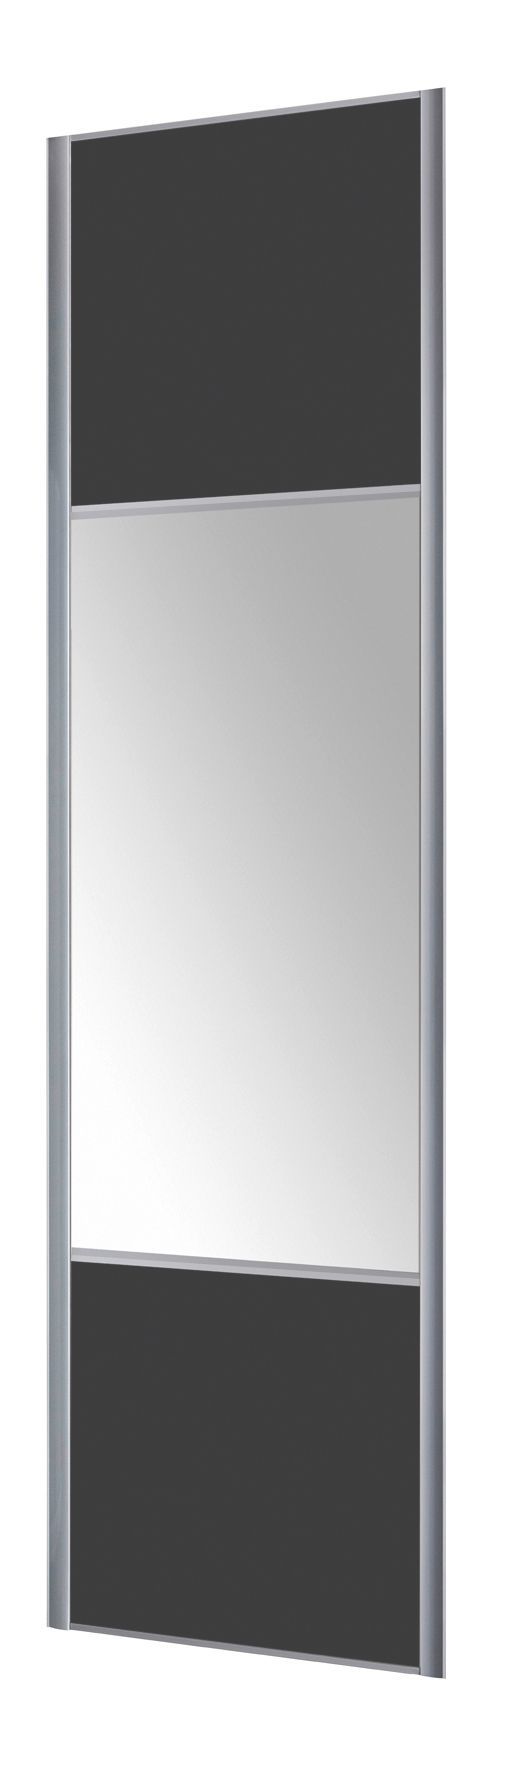 Form Valla Panelled Dark grey Mirrored Sliding wardrobe door (H) 2260mm x (W) 922mm